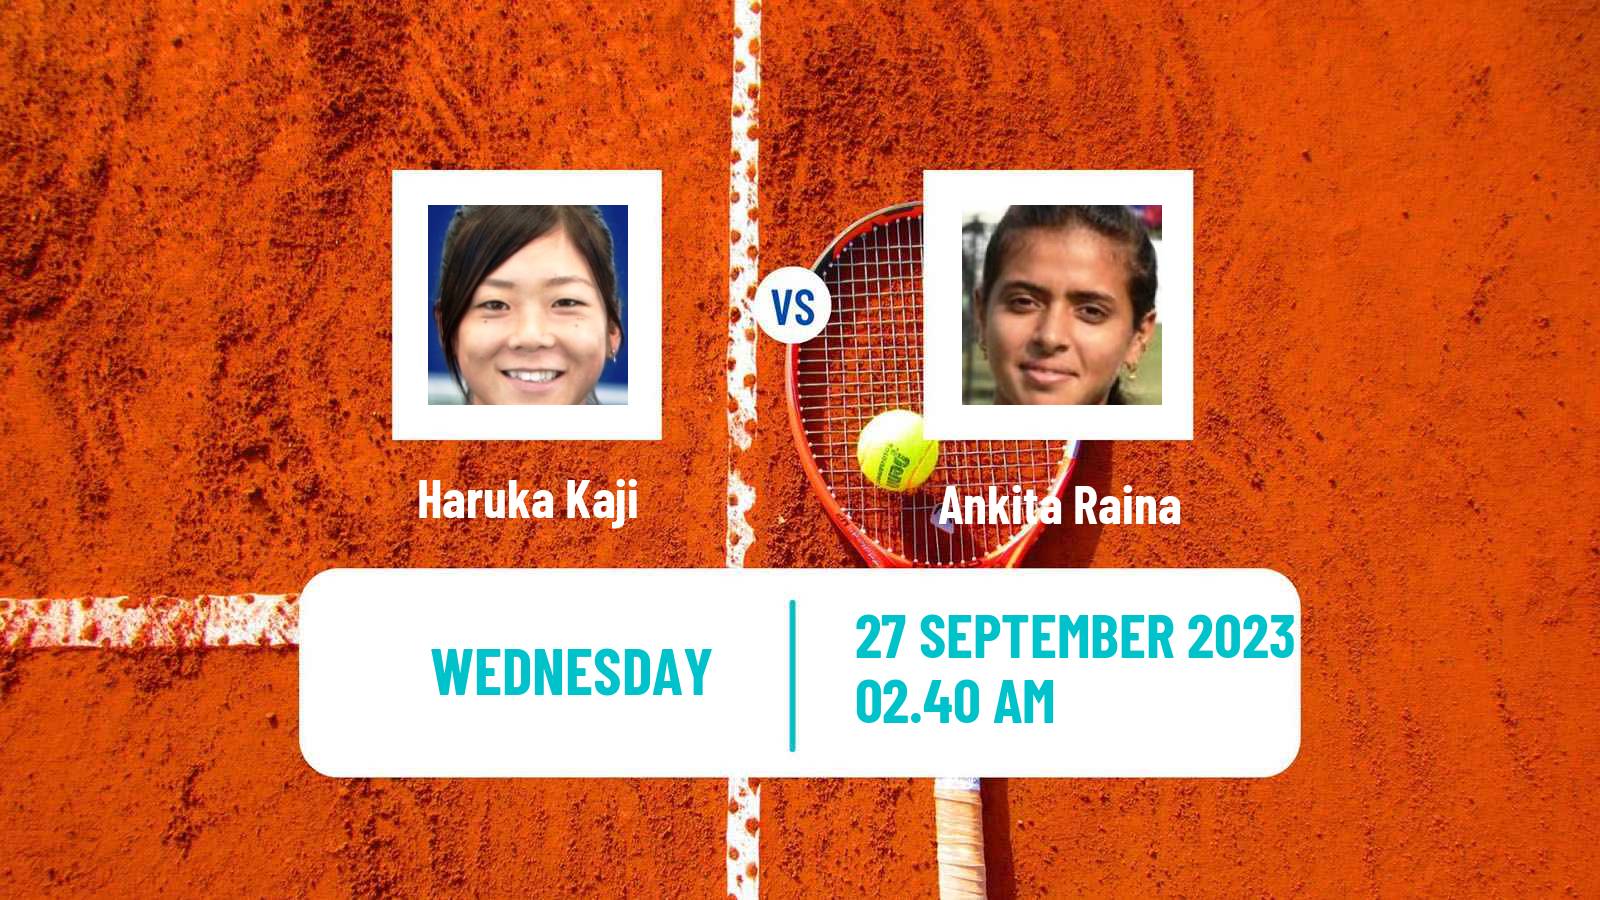 Tennis WTA Asian Games Haruka Kaji - Ankita Raina